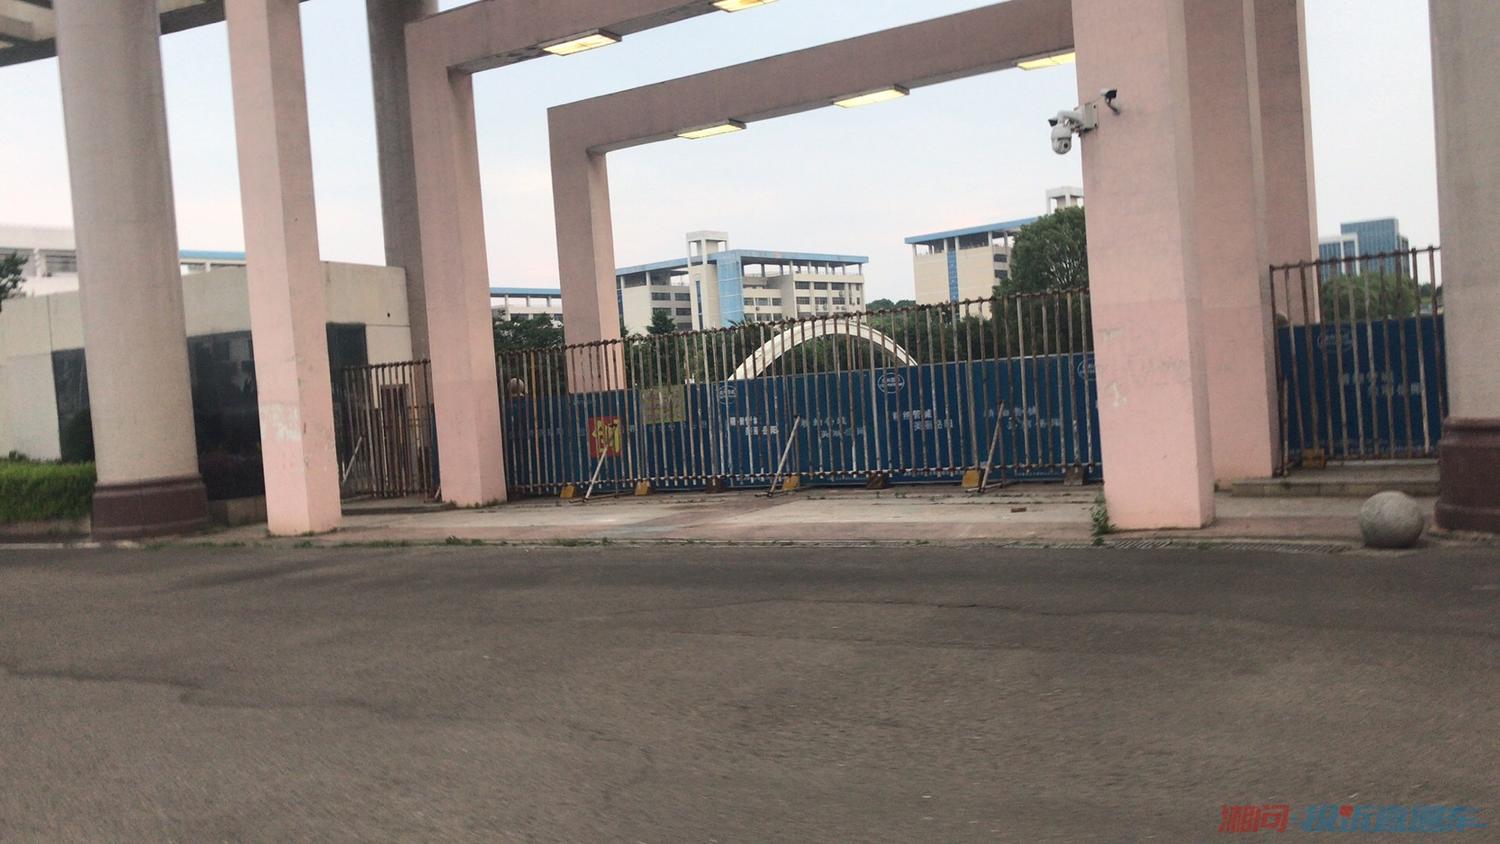 这是之前拍摄的已经封闭的湖南理工学院大门,现在大门关的更严实